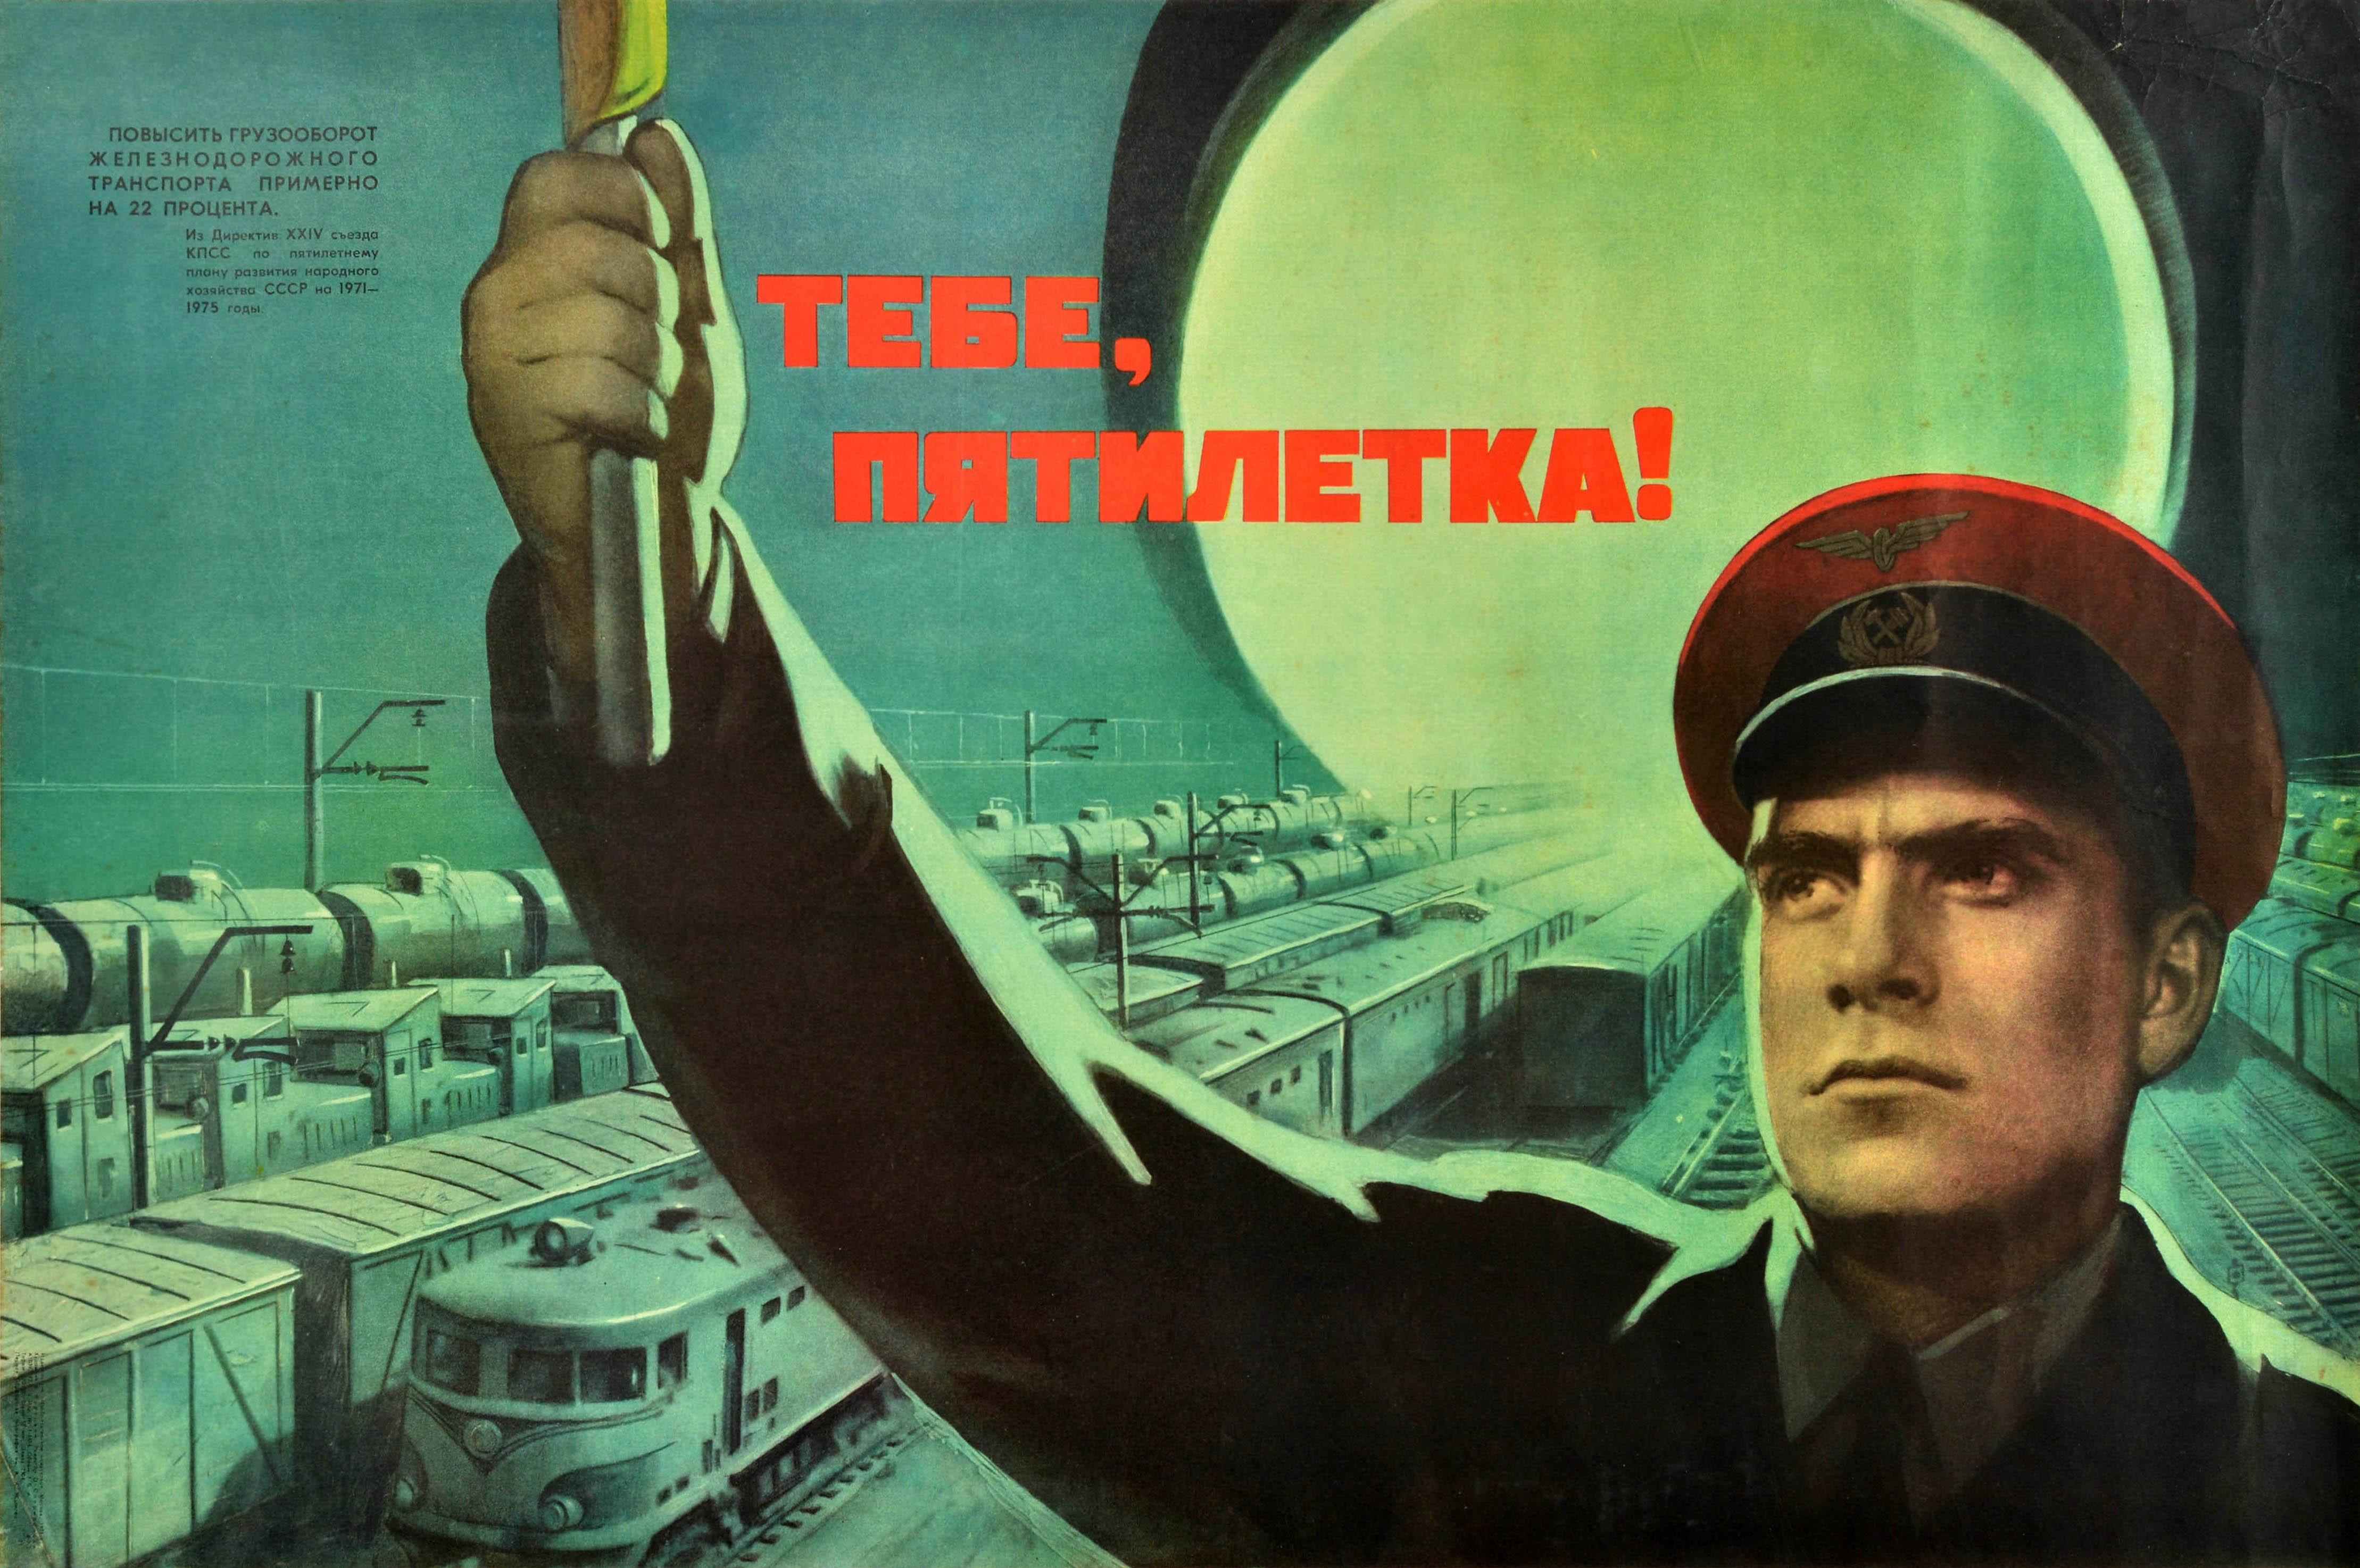 Print Viktor Koretsky  - Affiche rétro originale de propagande soviétique, Plan de cinq ans de retrait des chemins de fer